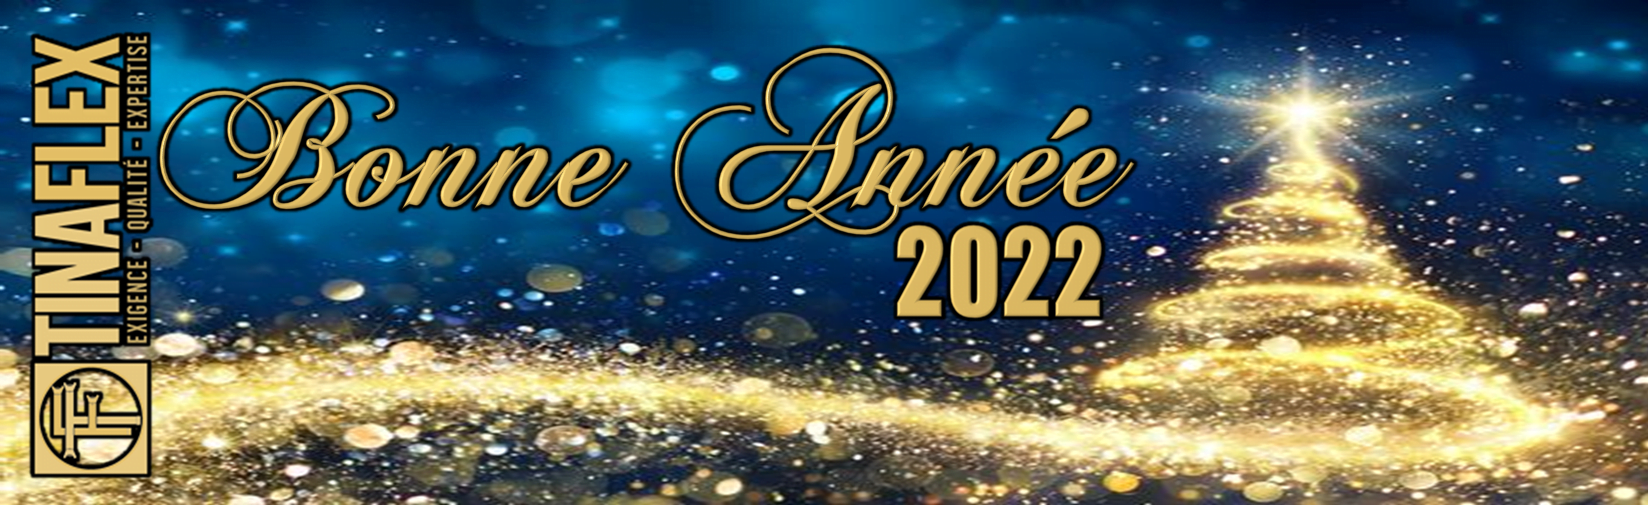 Bonne Année 2022 - signature Bruno